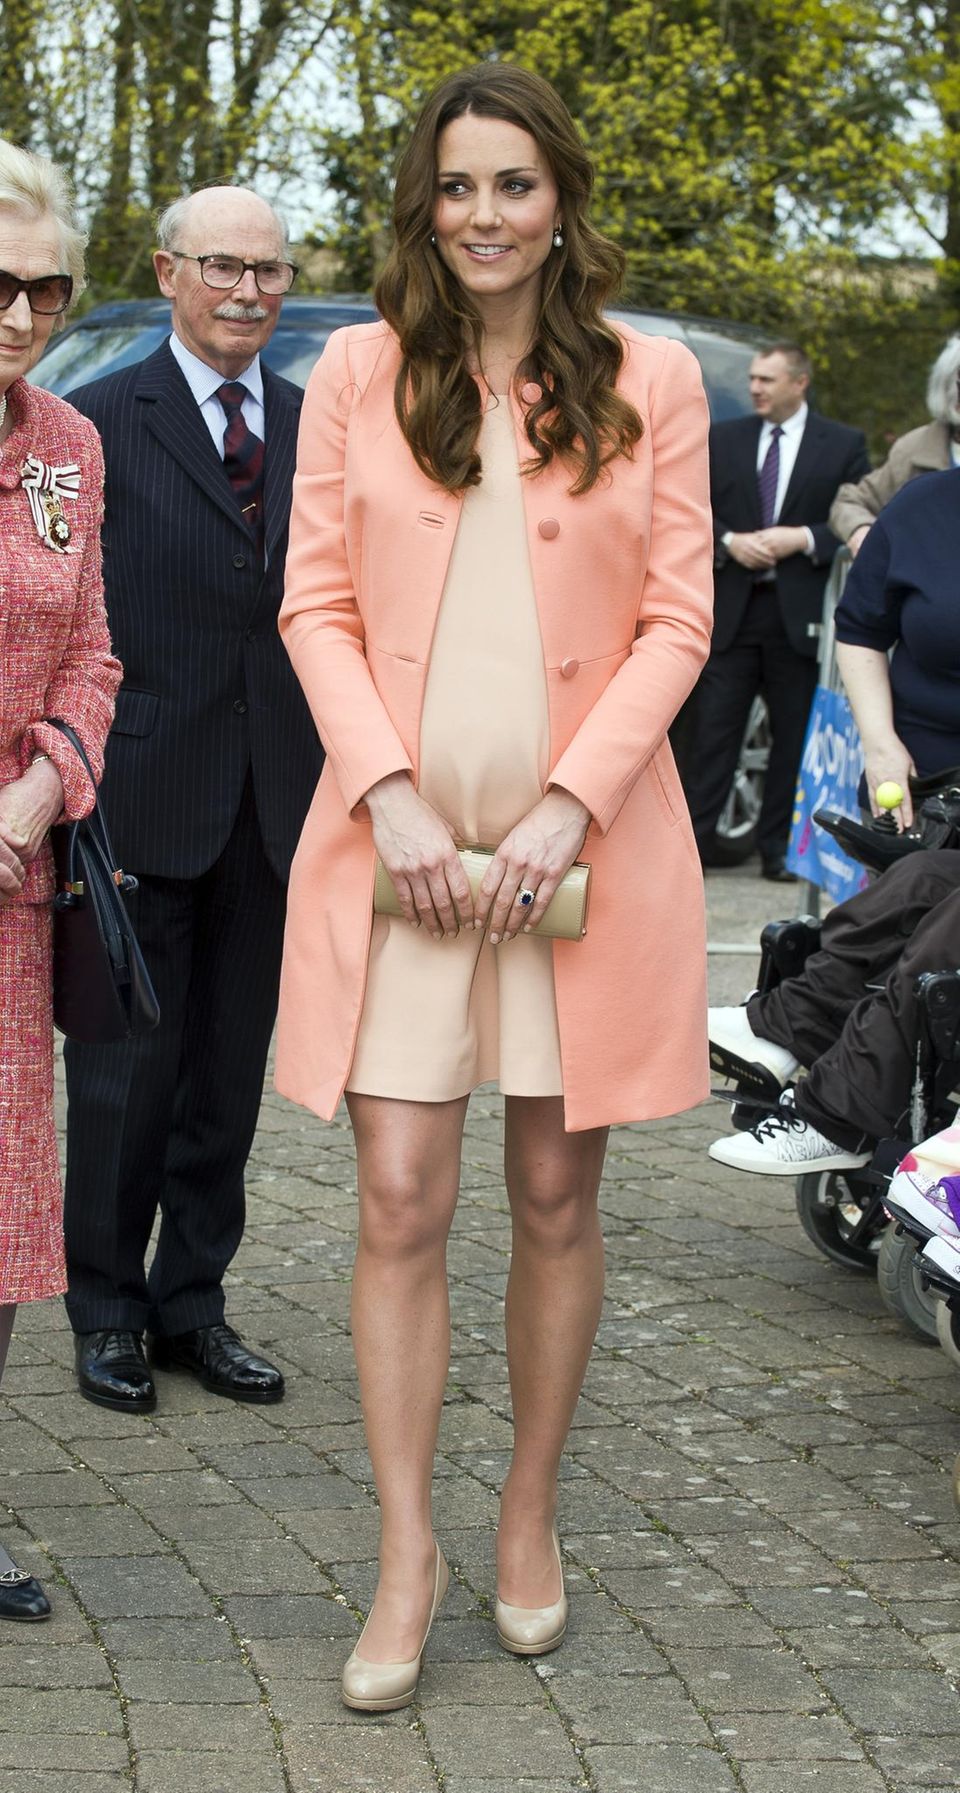 Meghan Markle + Herzogin Kate: Kate Middleton schwanger